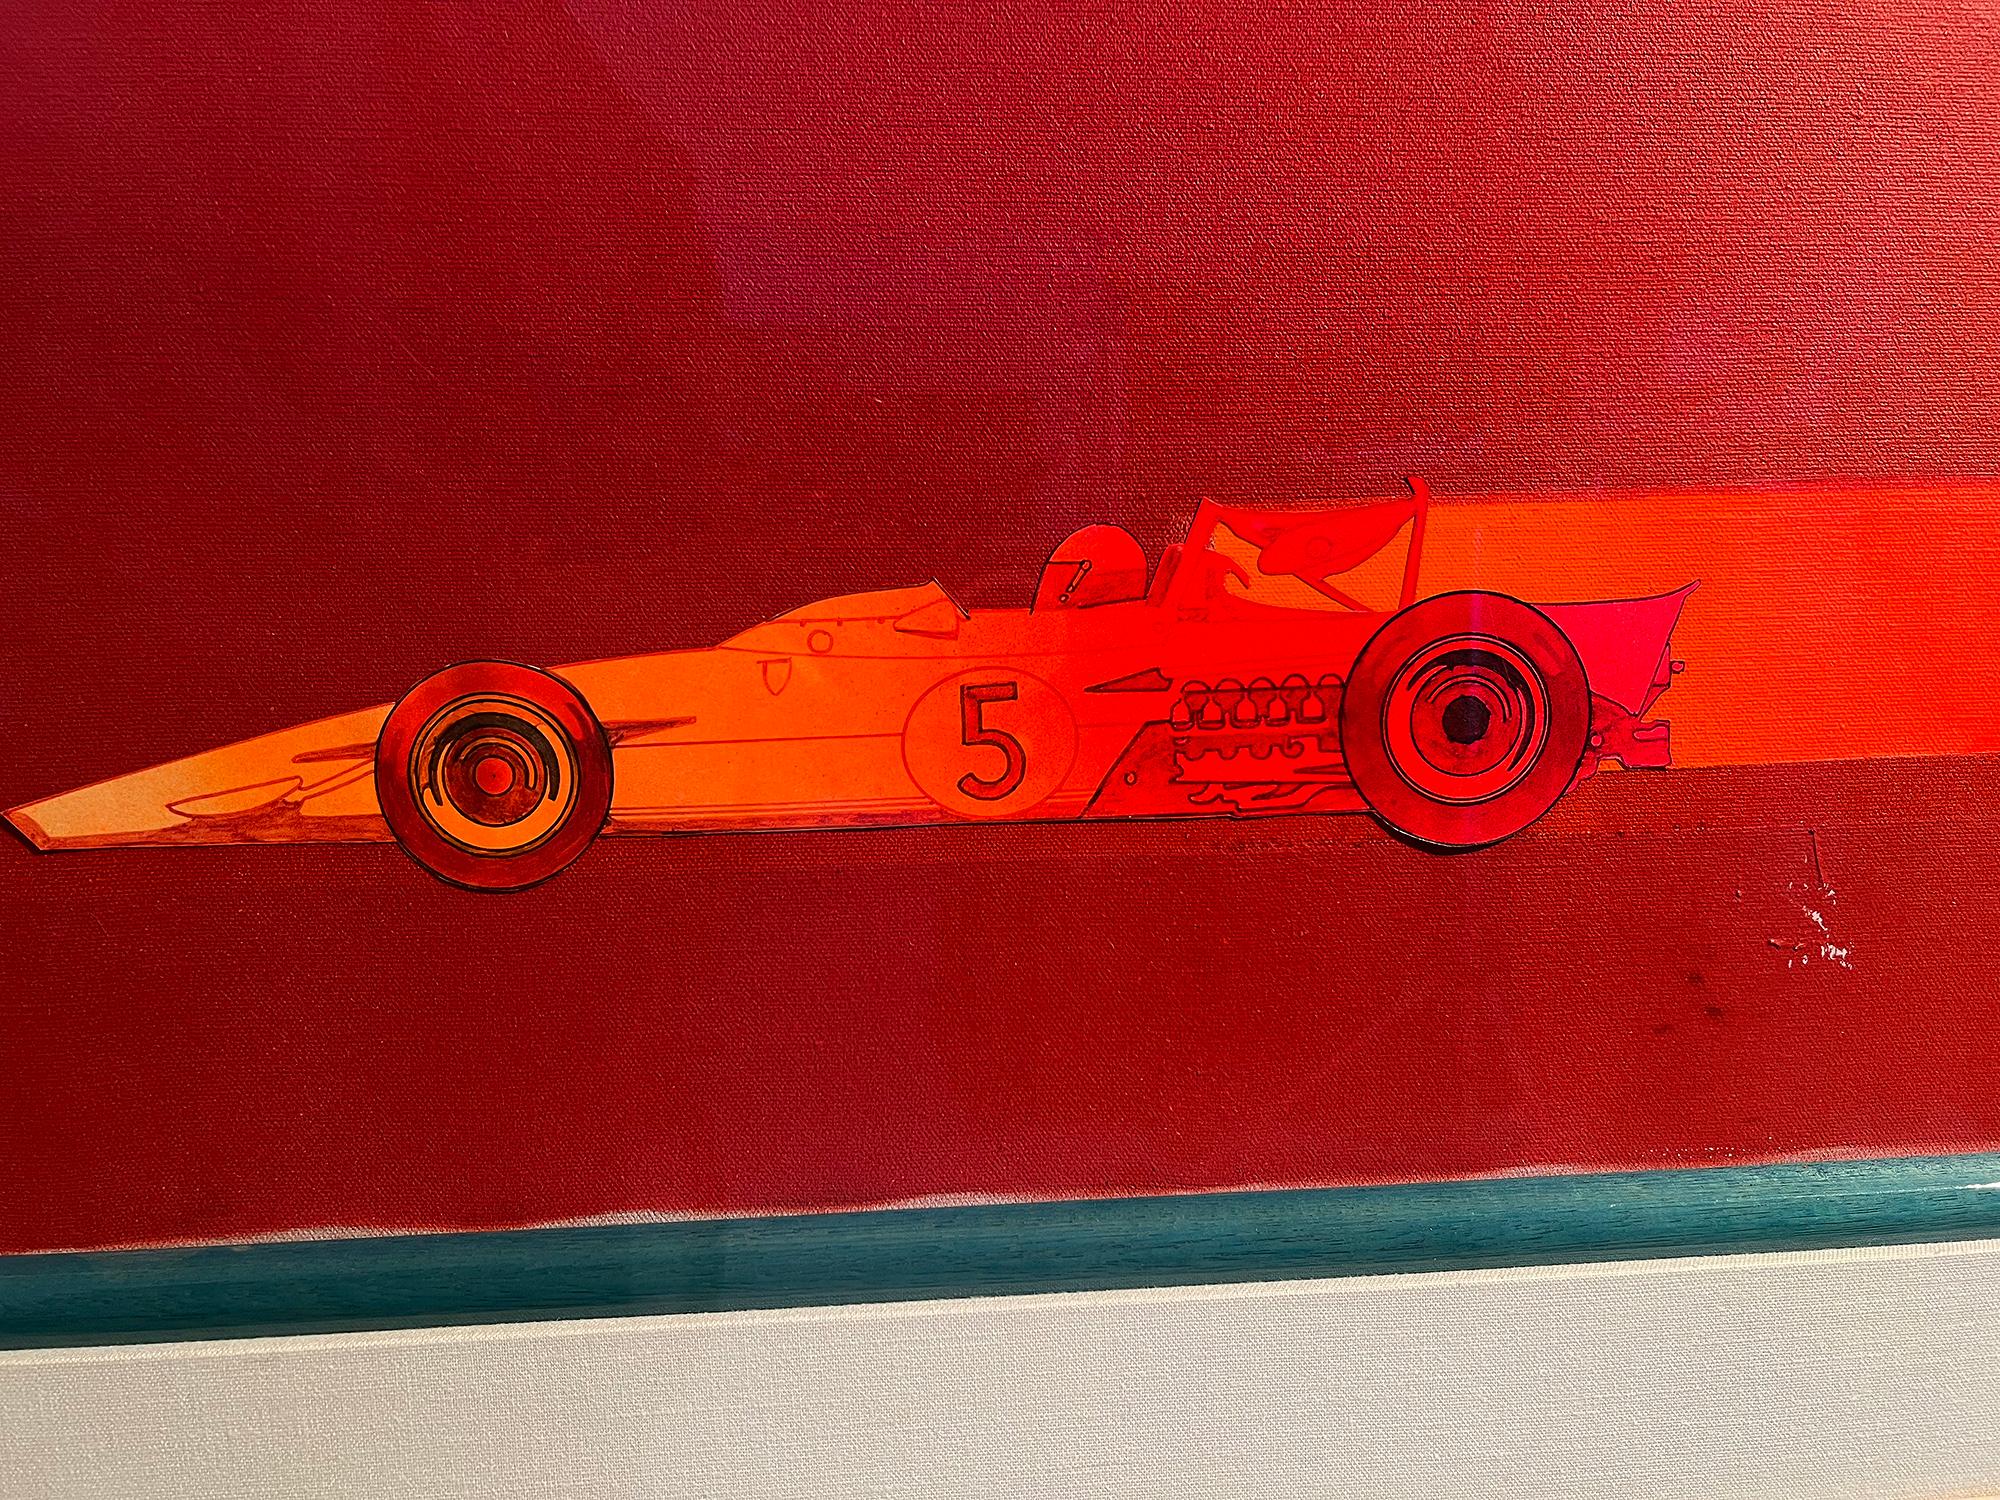 Racing-Autos in leuchtendem Rot  Sportwagen illustrierte Illustration – Sportwagen – Rosa  (Pink), Abstract Painting, von Bob Peak